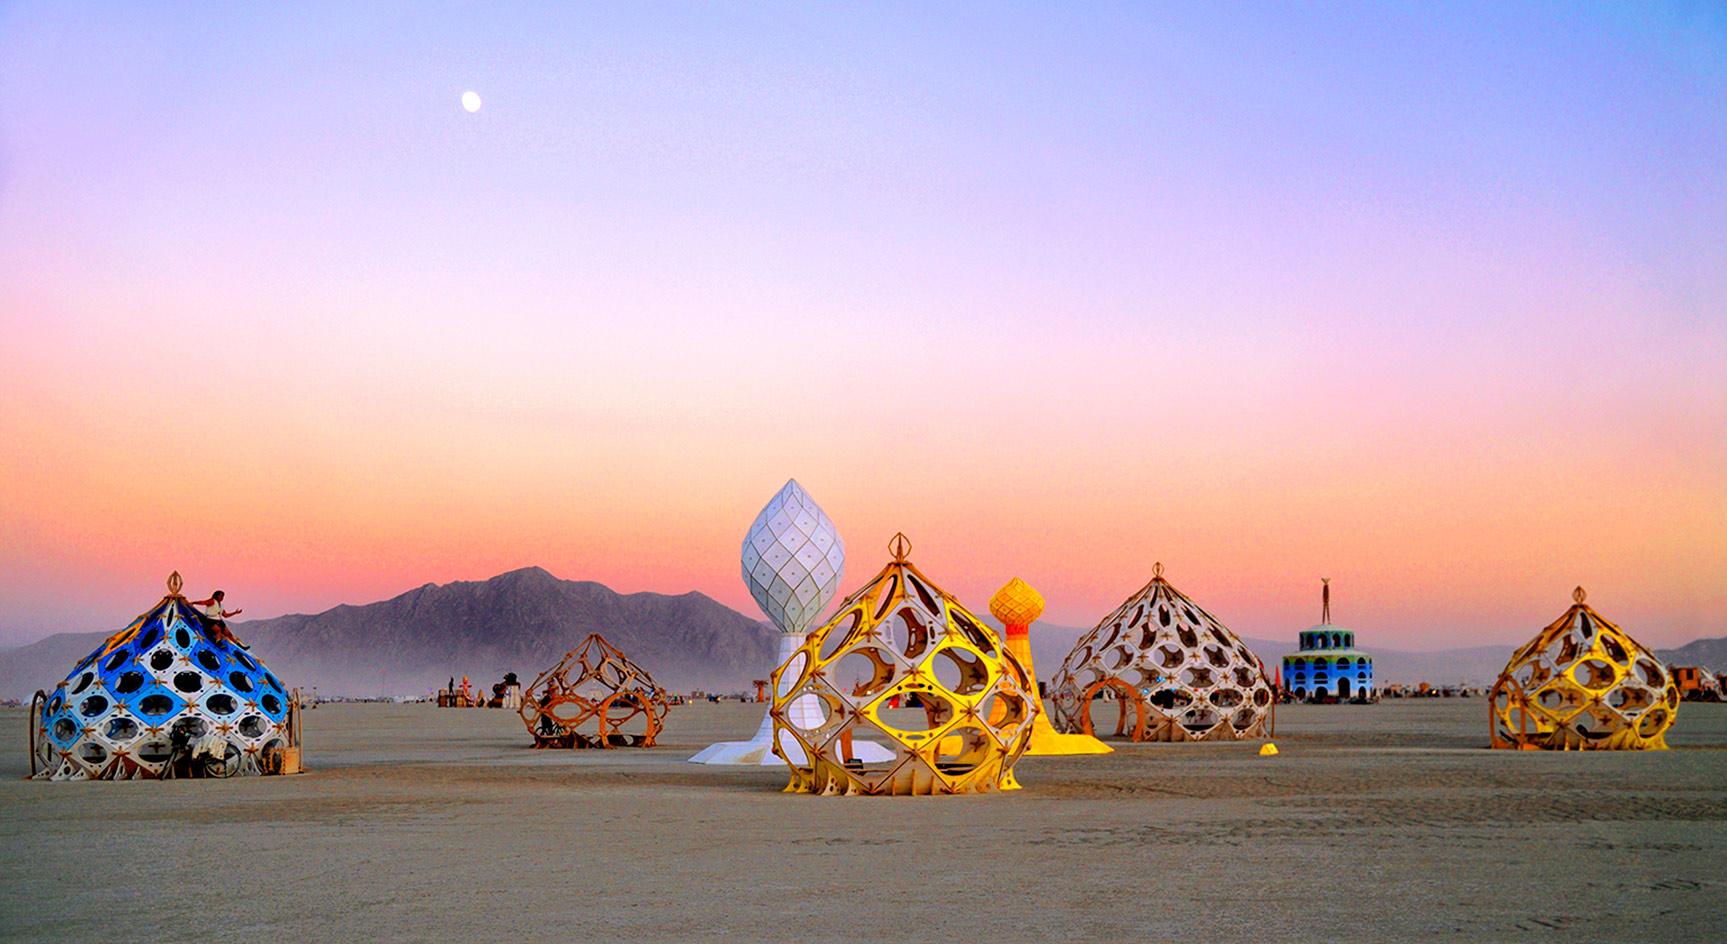 Photographer Philippe Glade documents Burning Man